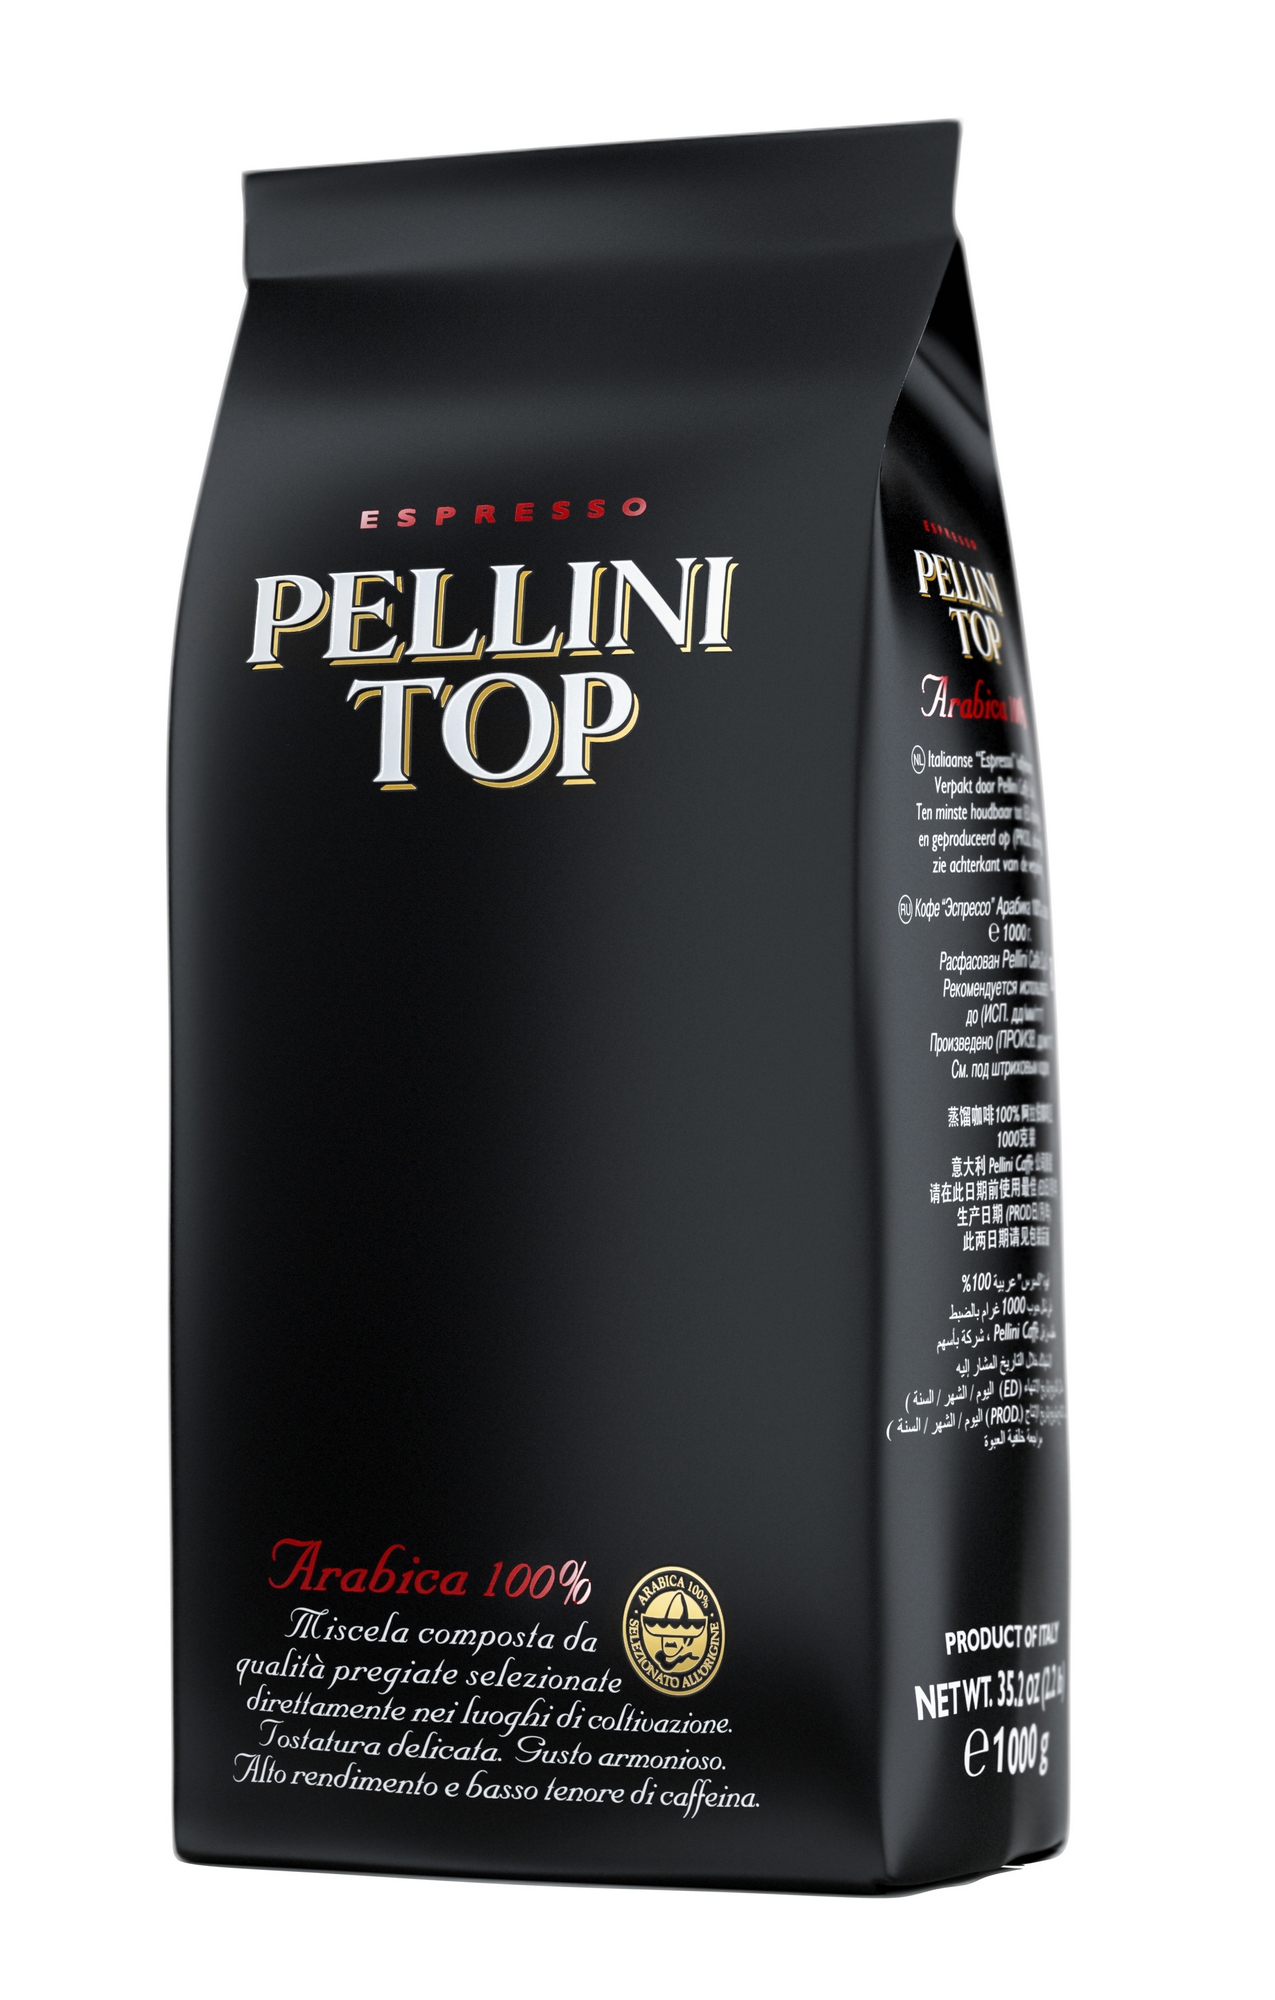 Топ зерен для кофемашины. Зерновой кофе Pellini Top 1 кг. Пеллини топ кофе в зернах. Кофе в зернах 1 кг Pellini. Кофе молотый Pellini Top.